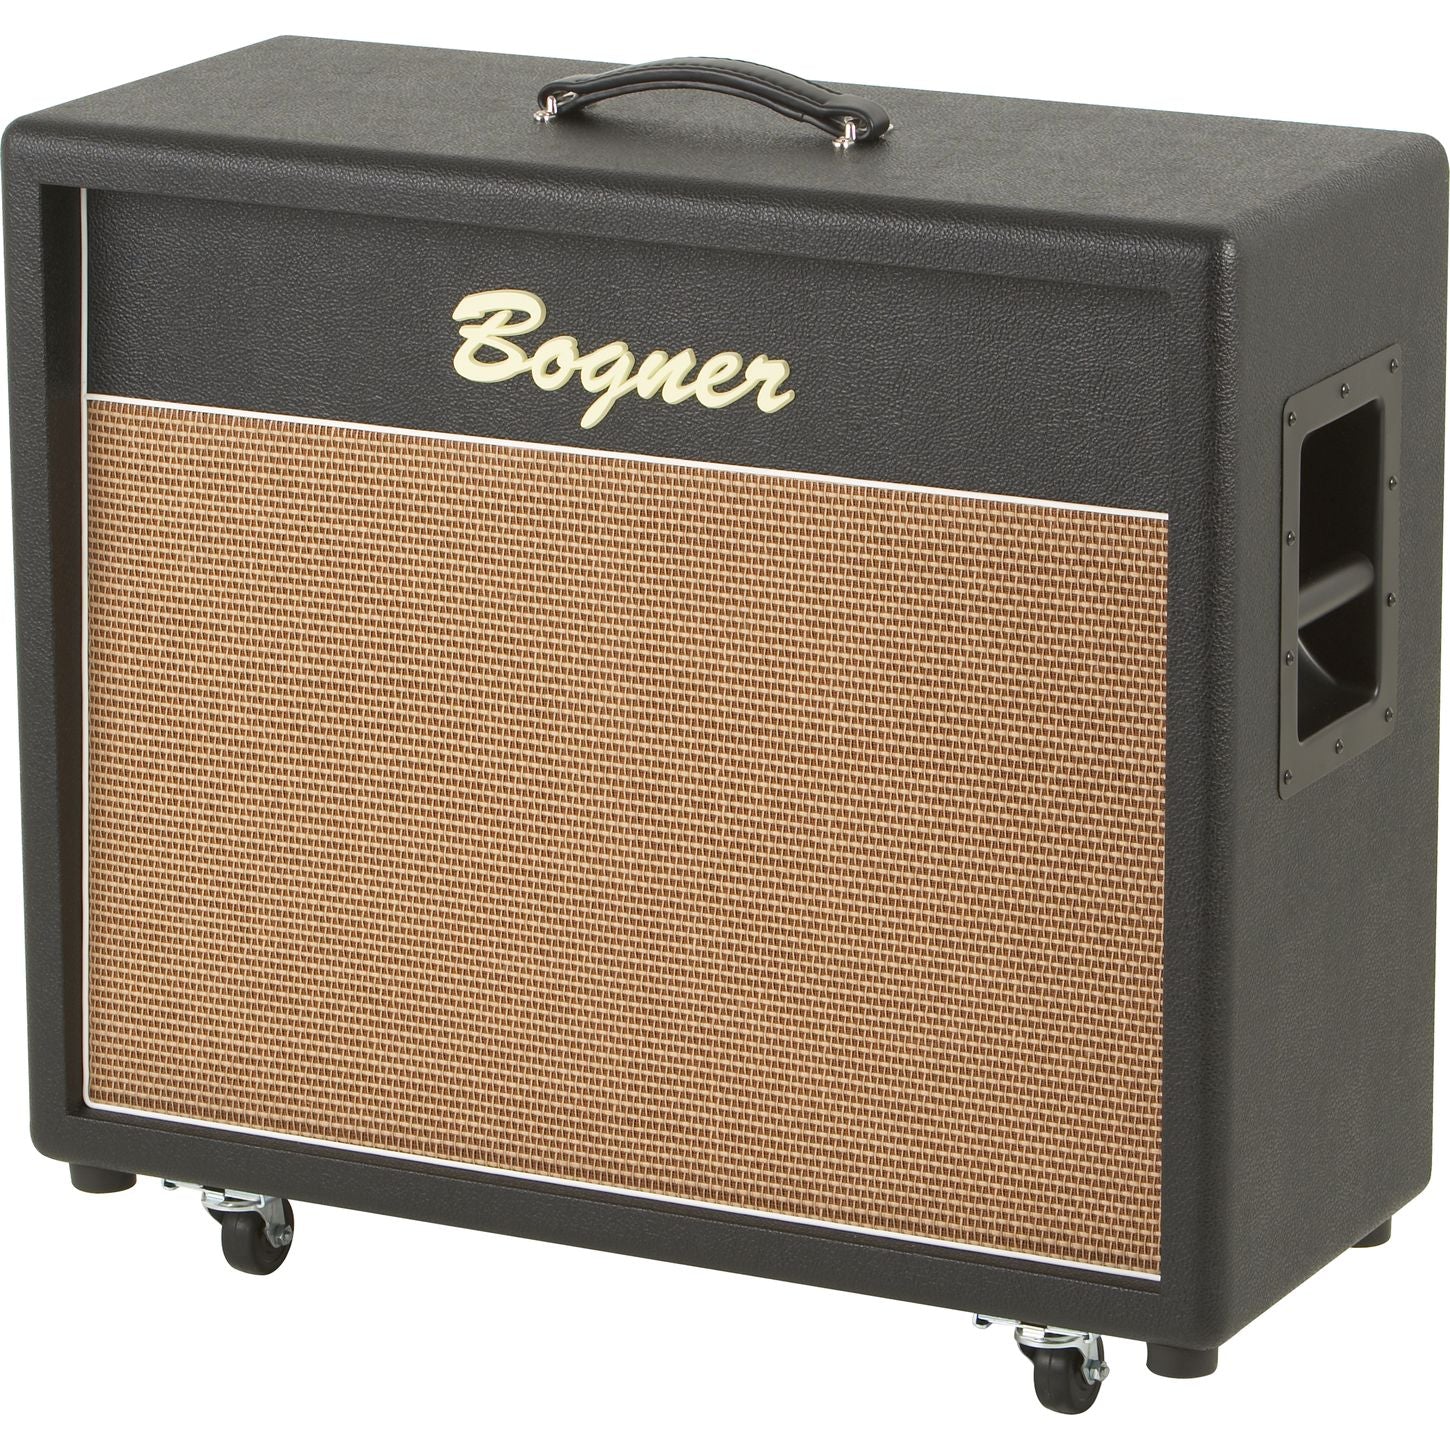 Bogner 212c 2x12 Guitar Amplifier